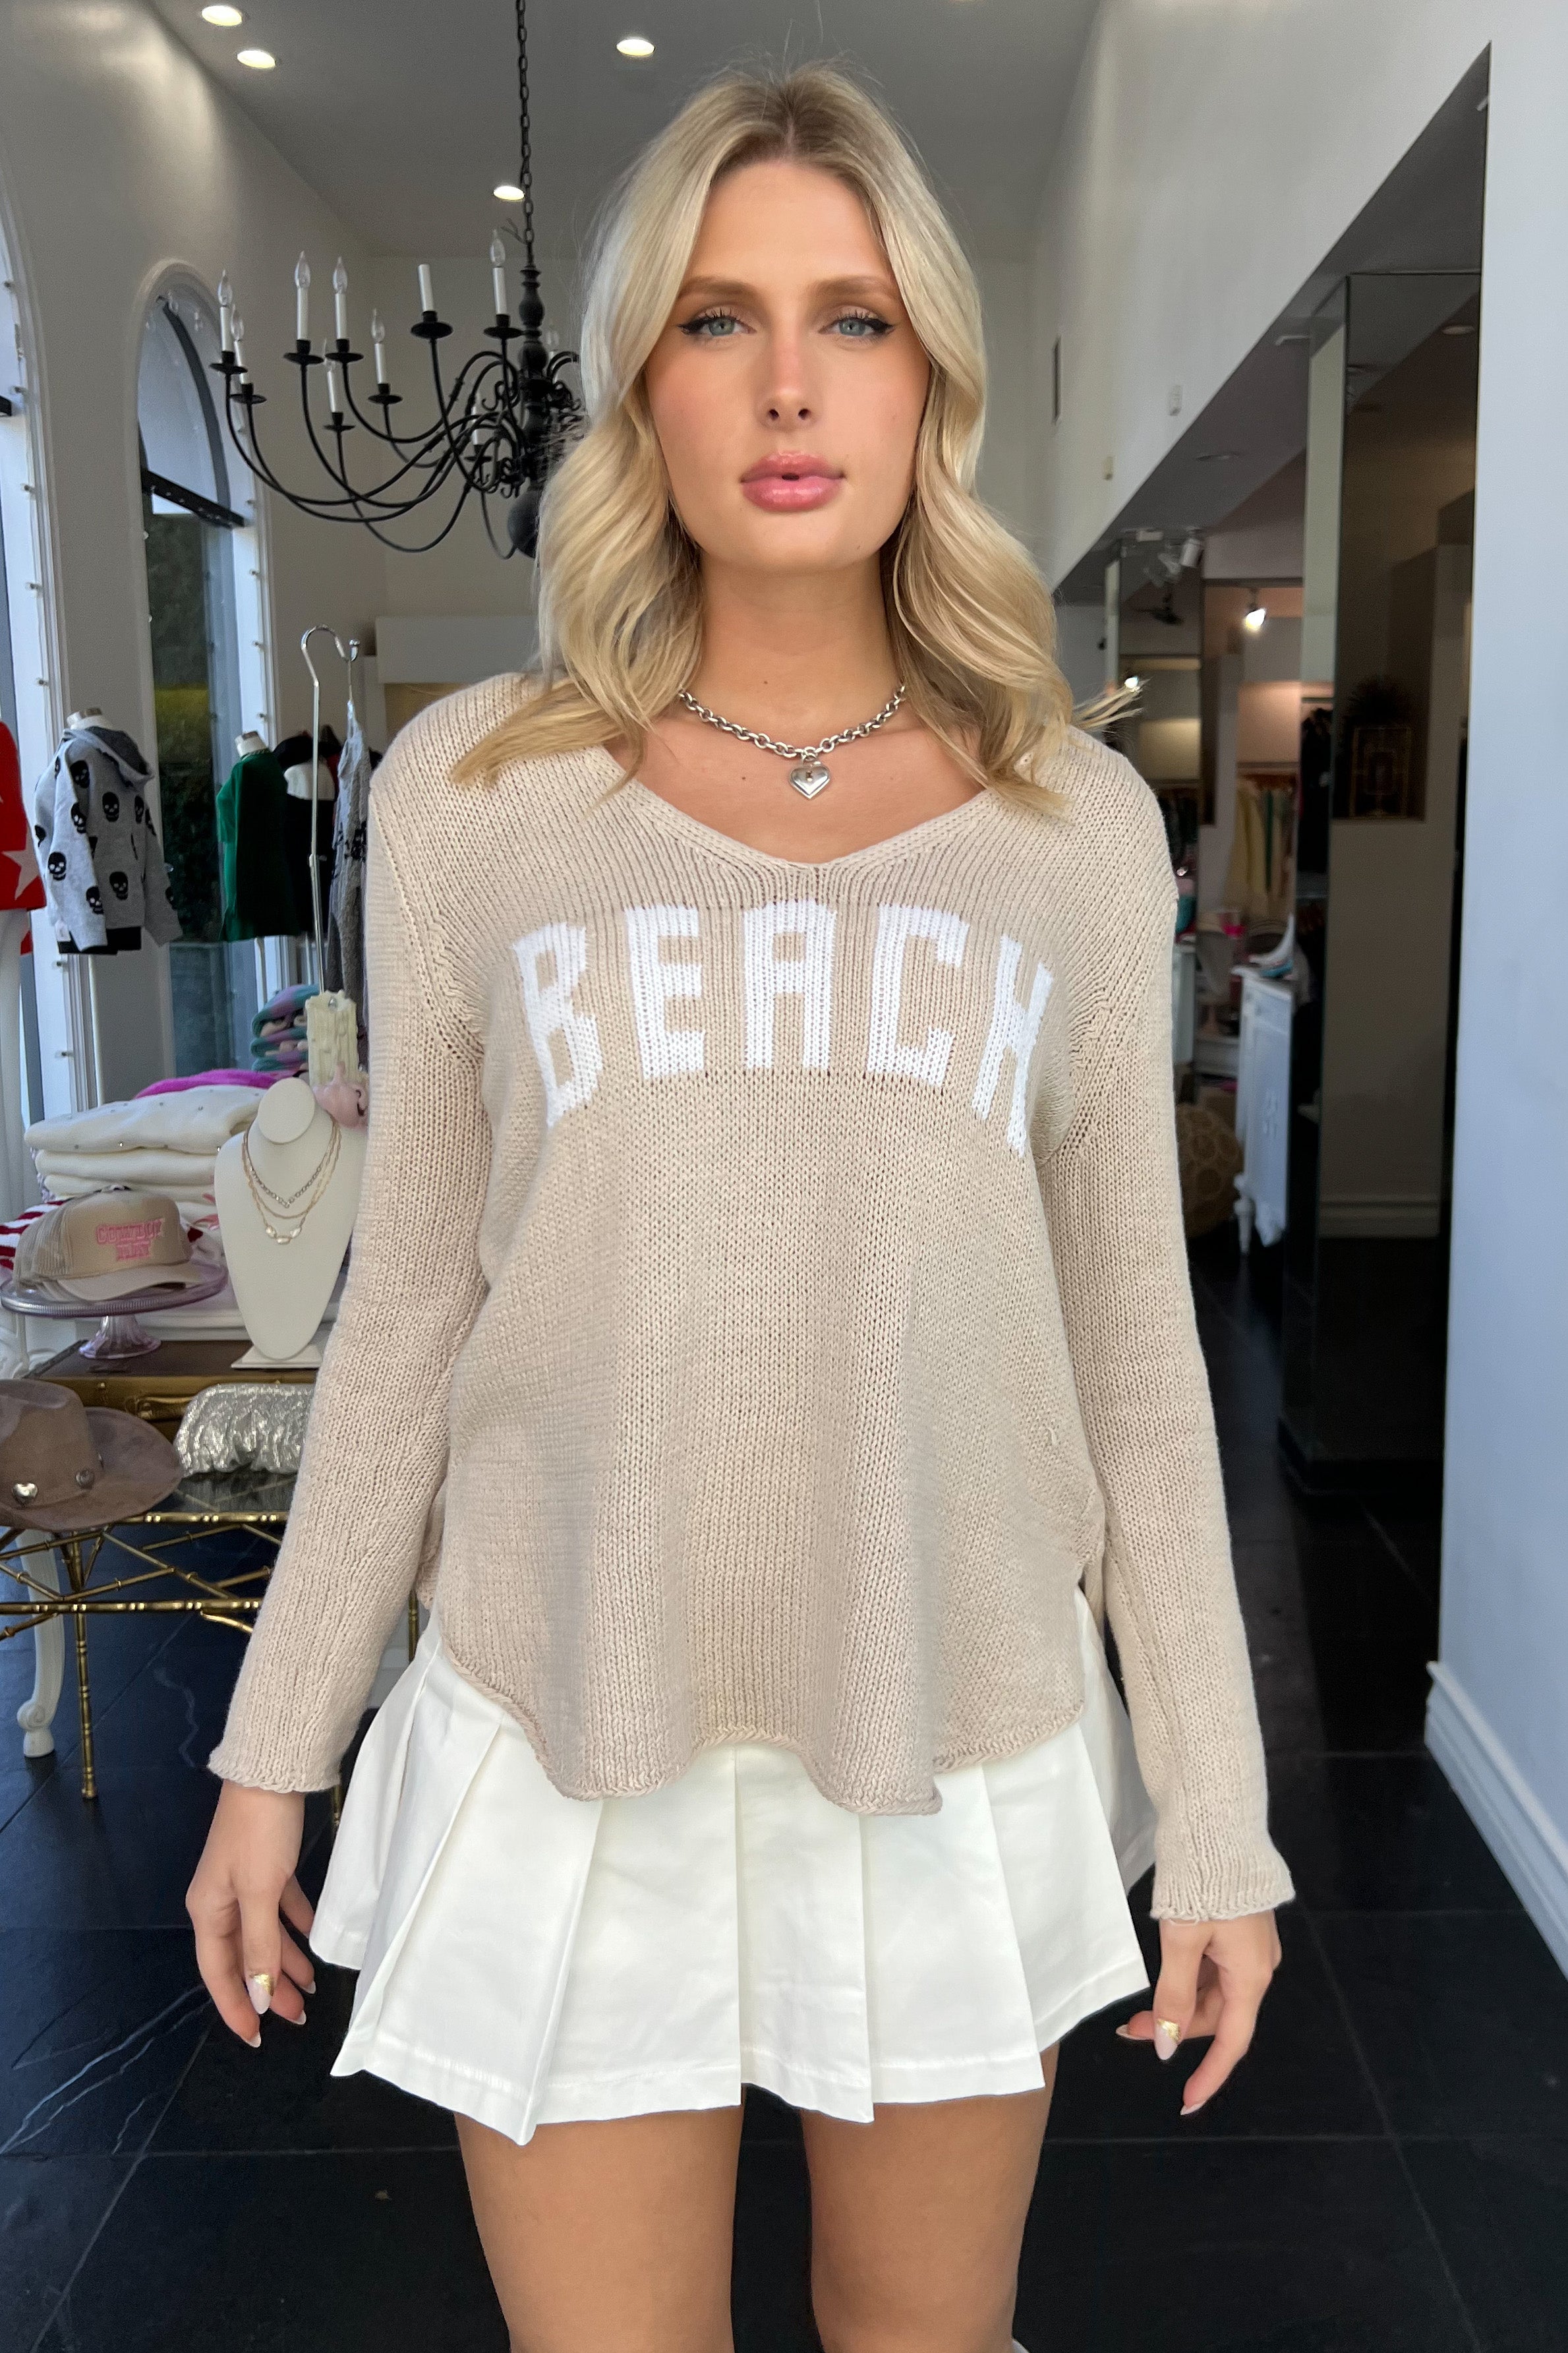 Beach Sweater-Beige + White